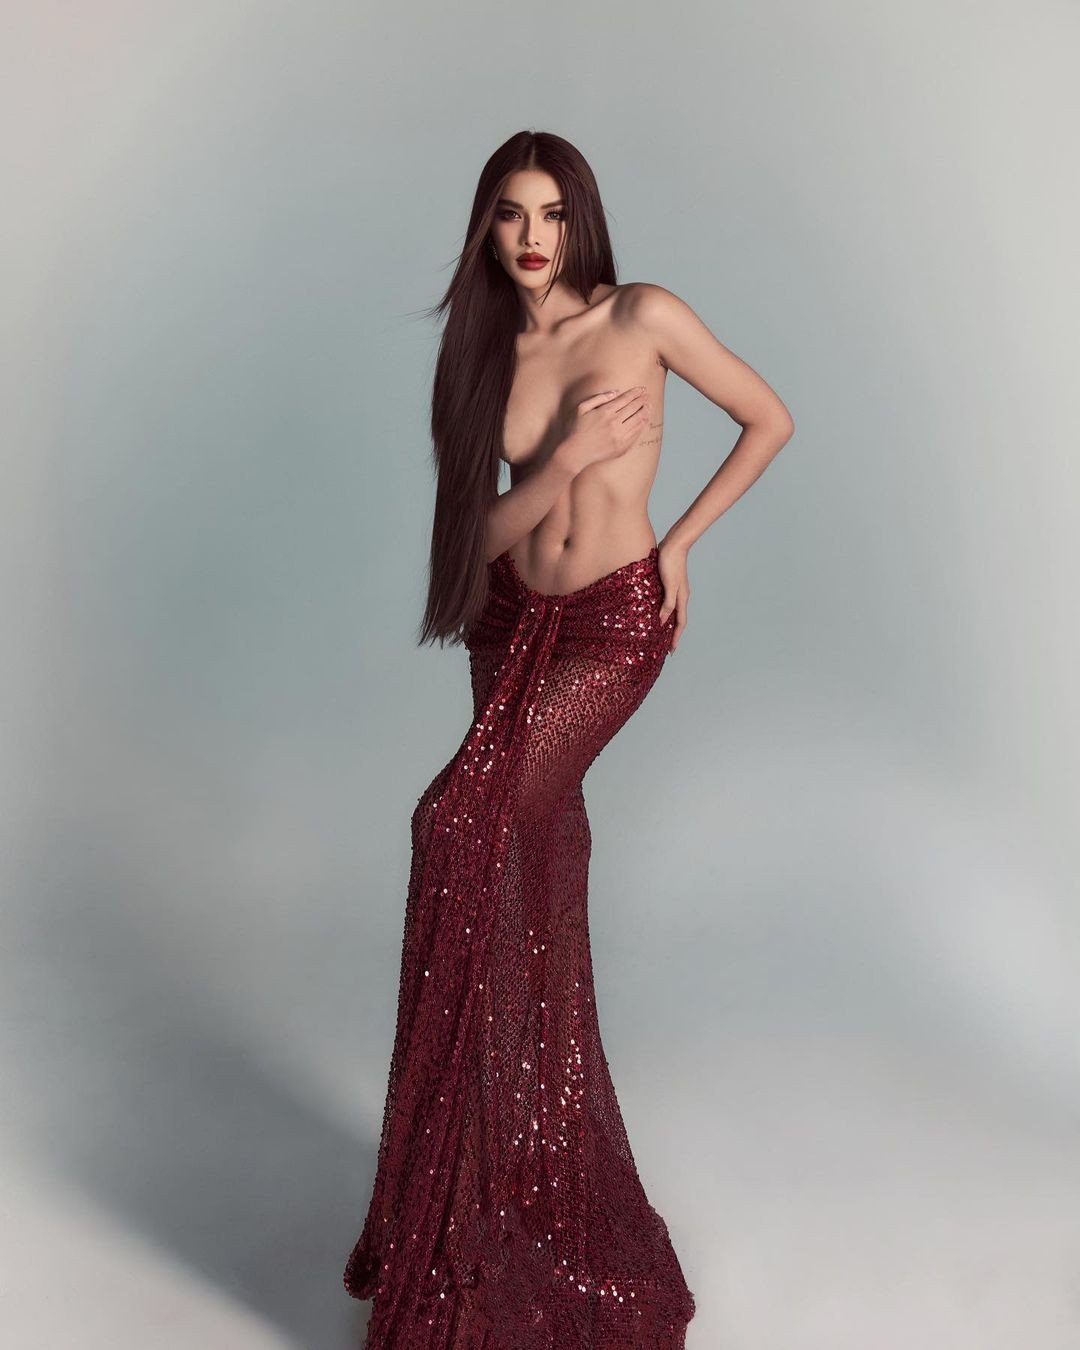 Hoa hậu Hòa bình Thái Lan gây tranh cãi vì chụp ảnh bán khỏa thân - 2